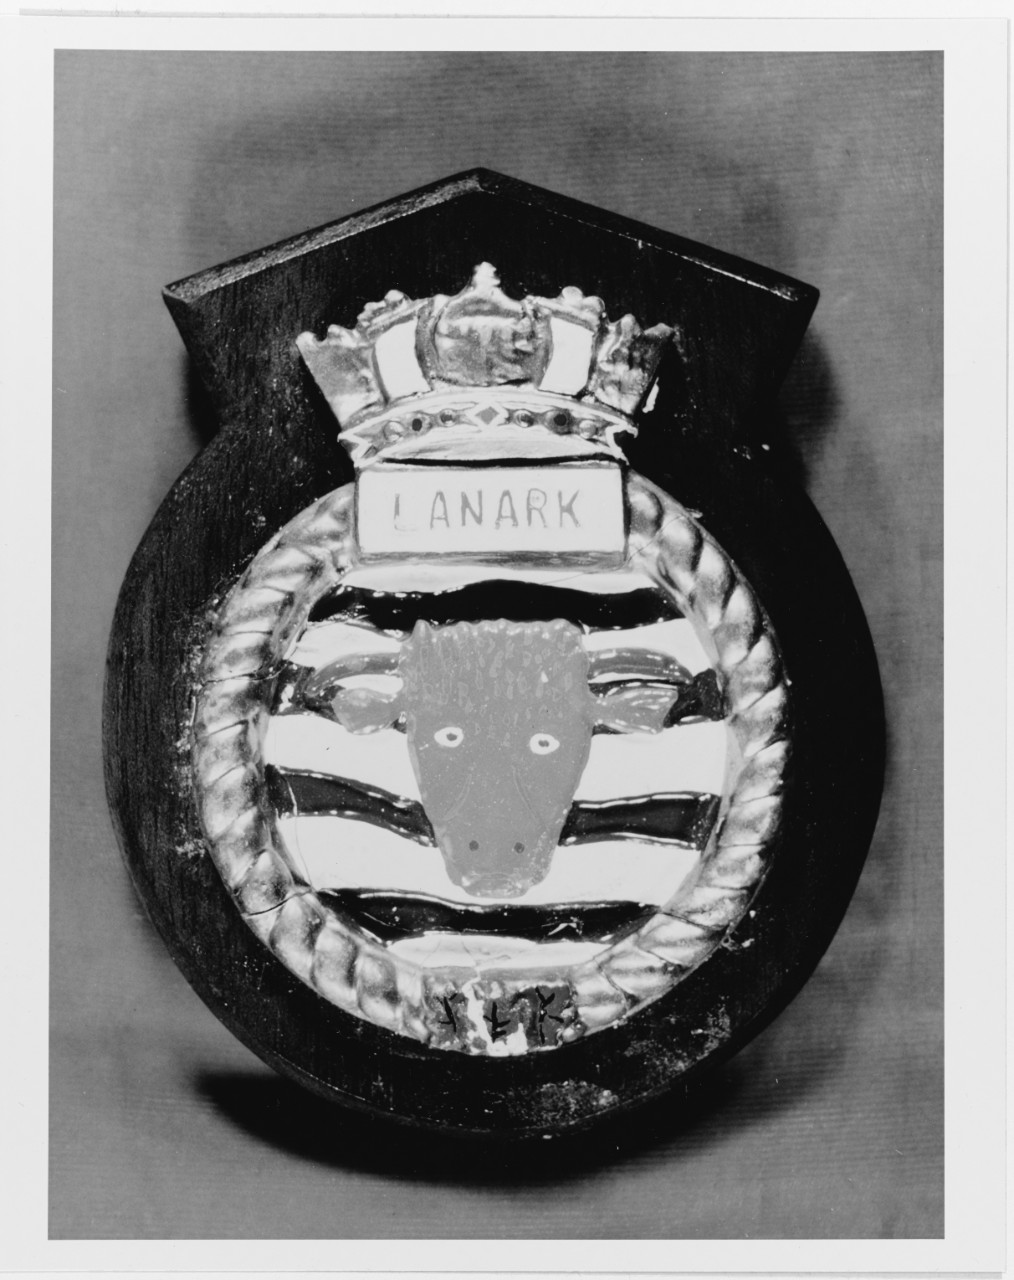 Insignia:  HMCS LANARK (Canadian frigate, 1943)